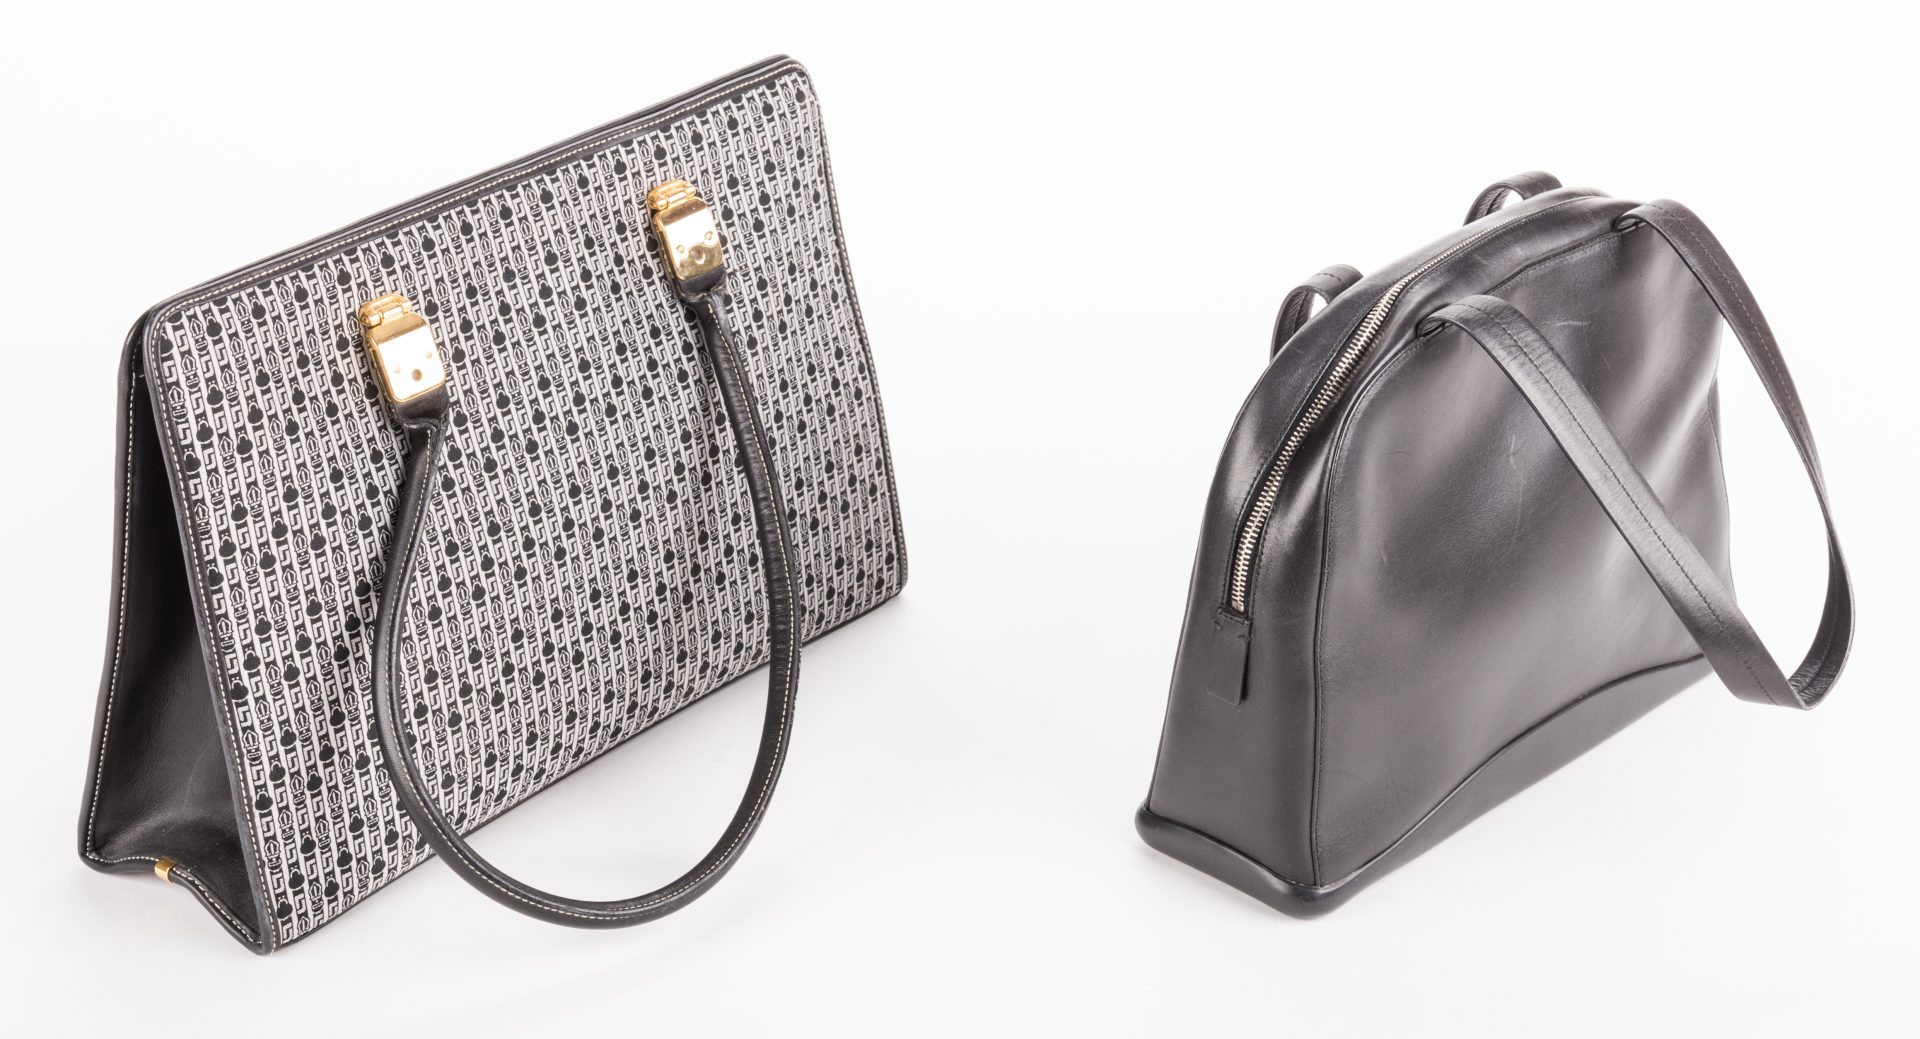 Lot 839: 2 Designer Handbags, inc. Judith Leiber and Prada.